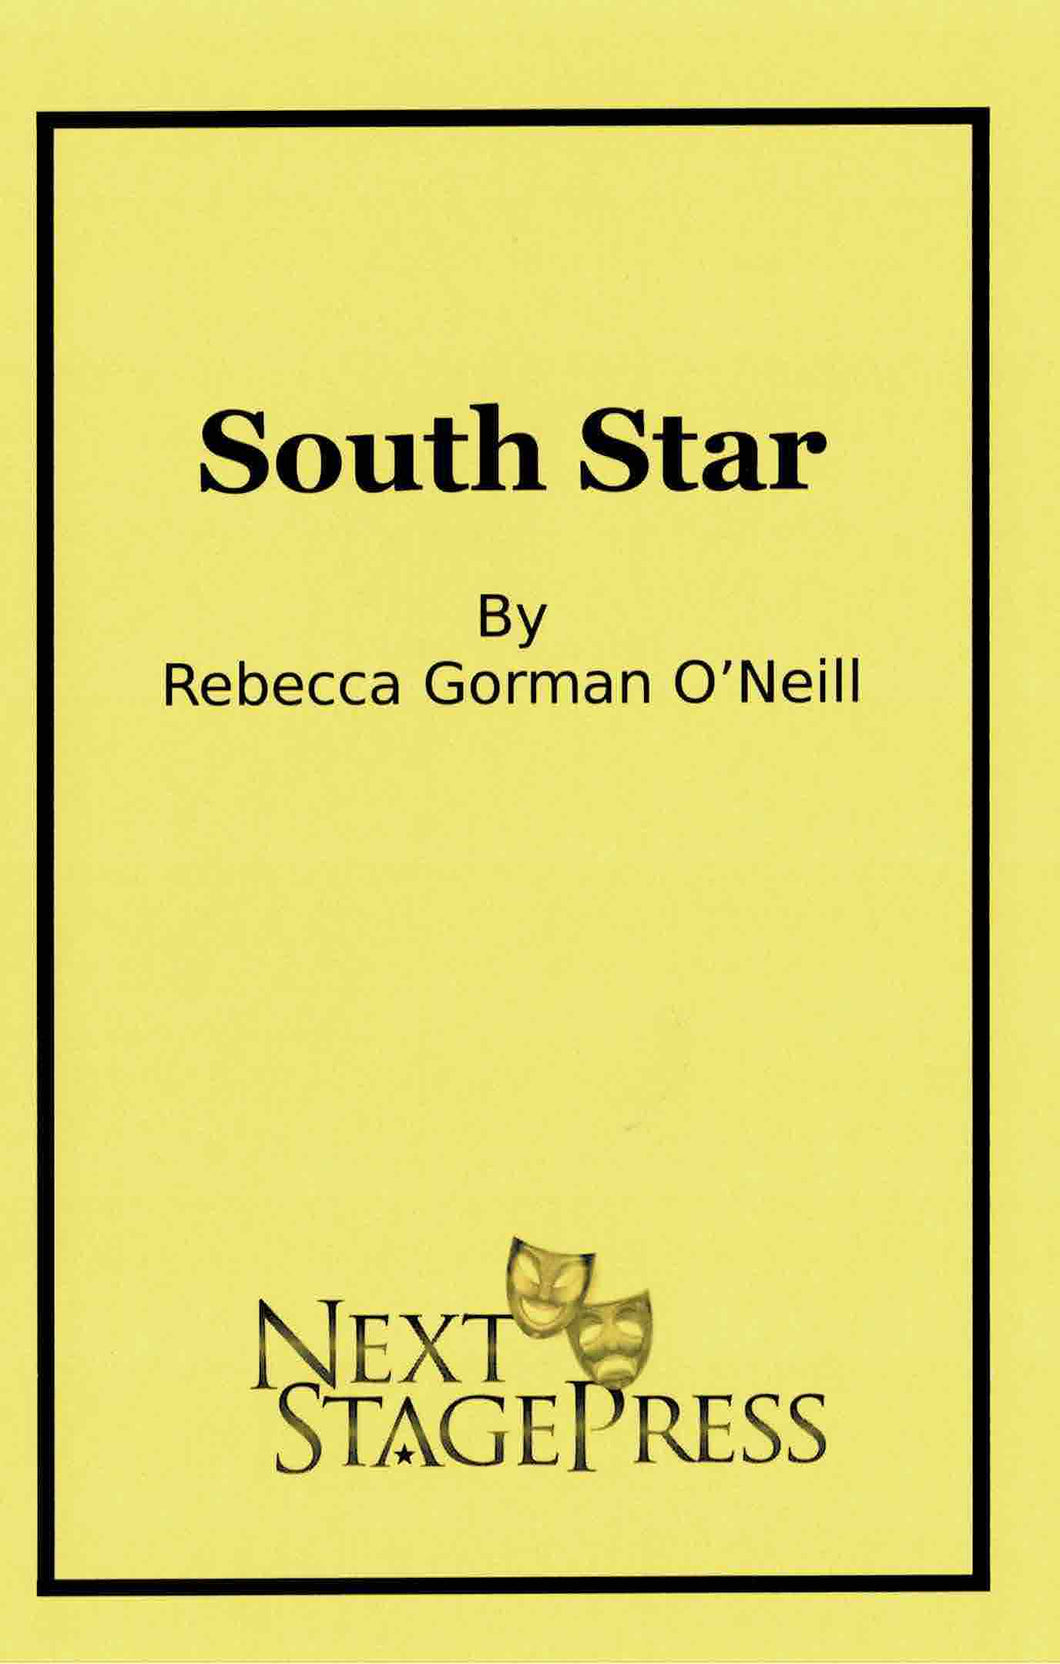 SOUTH STAR by Rebecca Gorman O'Neill